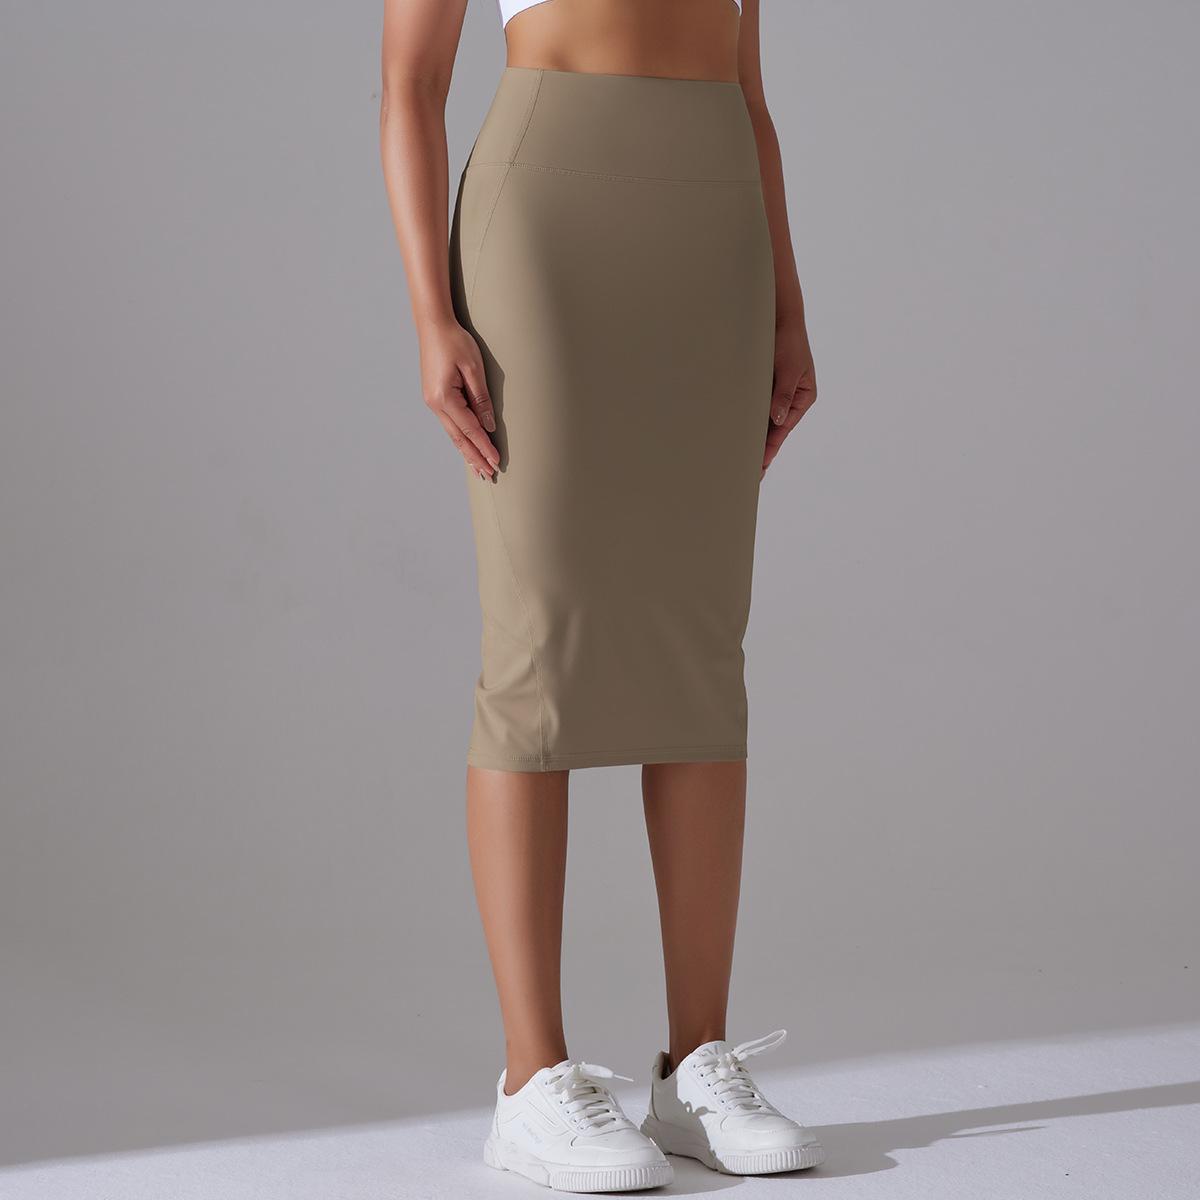 BamBam Women High Waist Stretch Slit Sports Skirt - BamBam